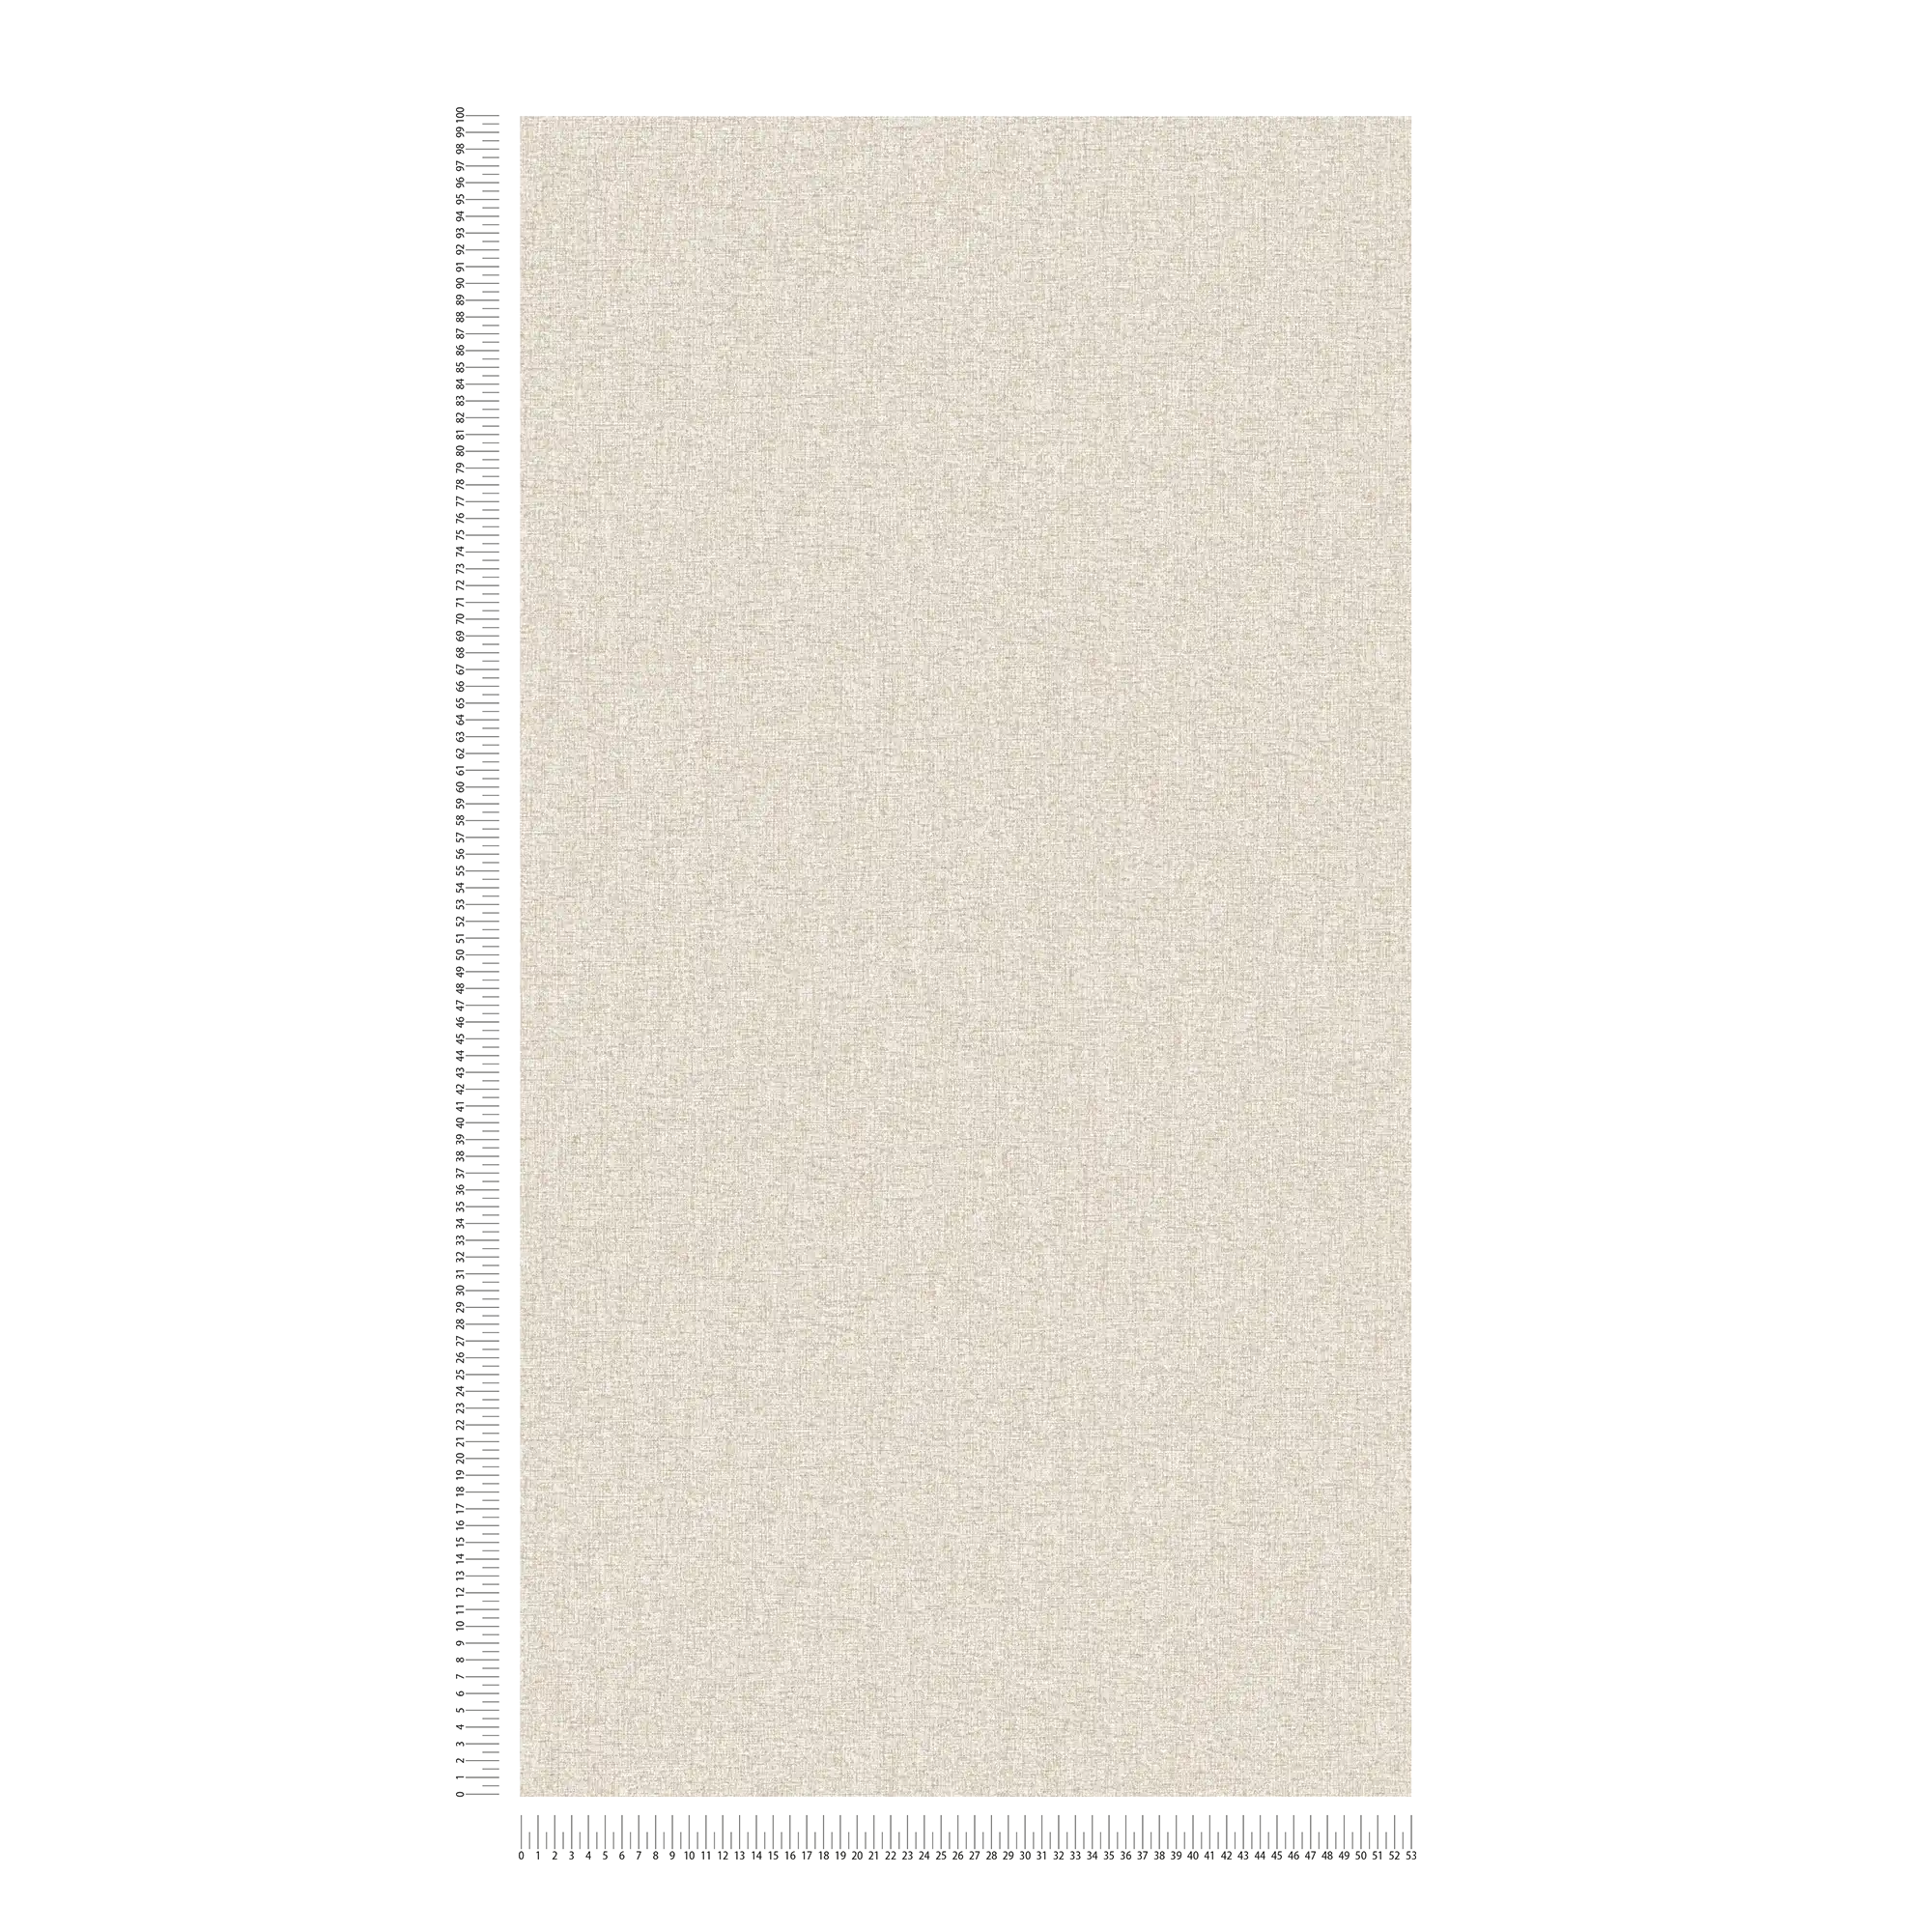             Papel pintado de tejido-no-tejido de aspecto liso con estructura ligera, mate - topo, beige, gris
        